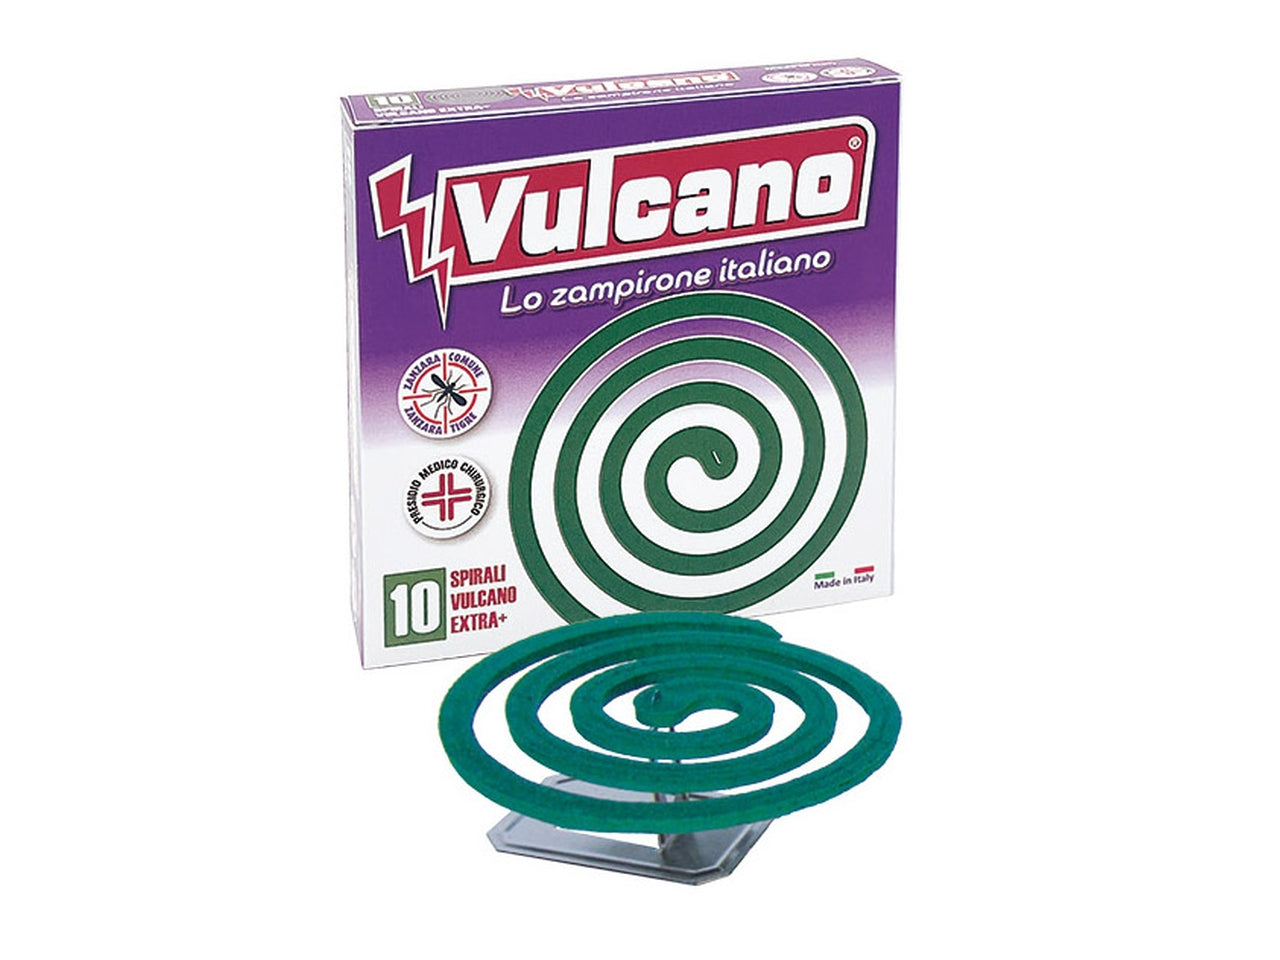 Spirali vulcano extra+ pack da 10 spirali$